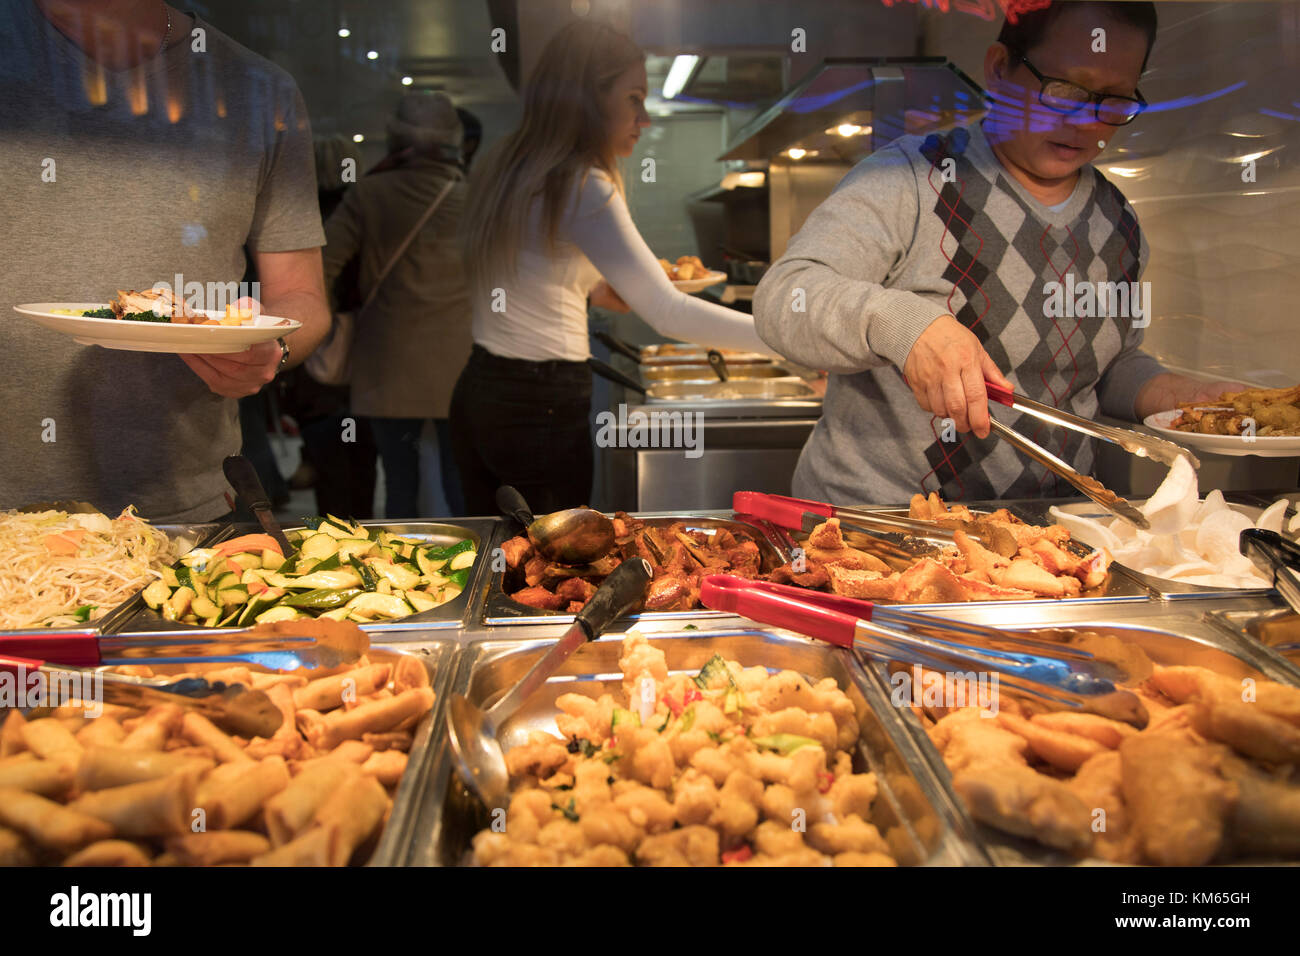 Mangiate quanto volete ristorante cinese a Chinatown a Londra, Inghilterra, Regno Unito. Molte persone mangiare cibo affare responsabilmente e offre un grande valore per i consumatori, tuttavia preoccupazioni per quanto riguarda i livelli di obesità nel Regno Unito rimangono, soprattutto con alimenti contenenti livelli elevati di grassi e zucchero. l'obesità è una condizione medica in cui un eccesso di grasso corporeo ha accumulato nella misura in cui esso potrebbe avere un effetto negativo sulla salute. Foto Stock